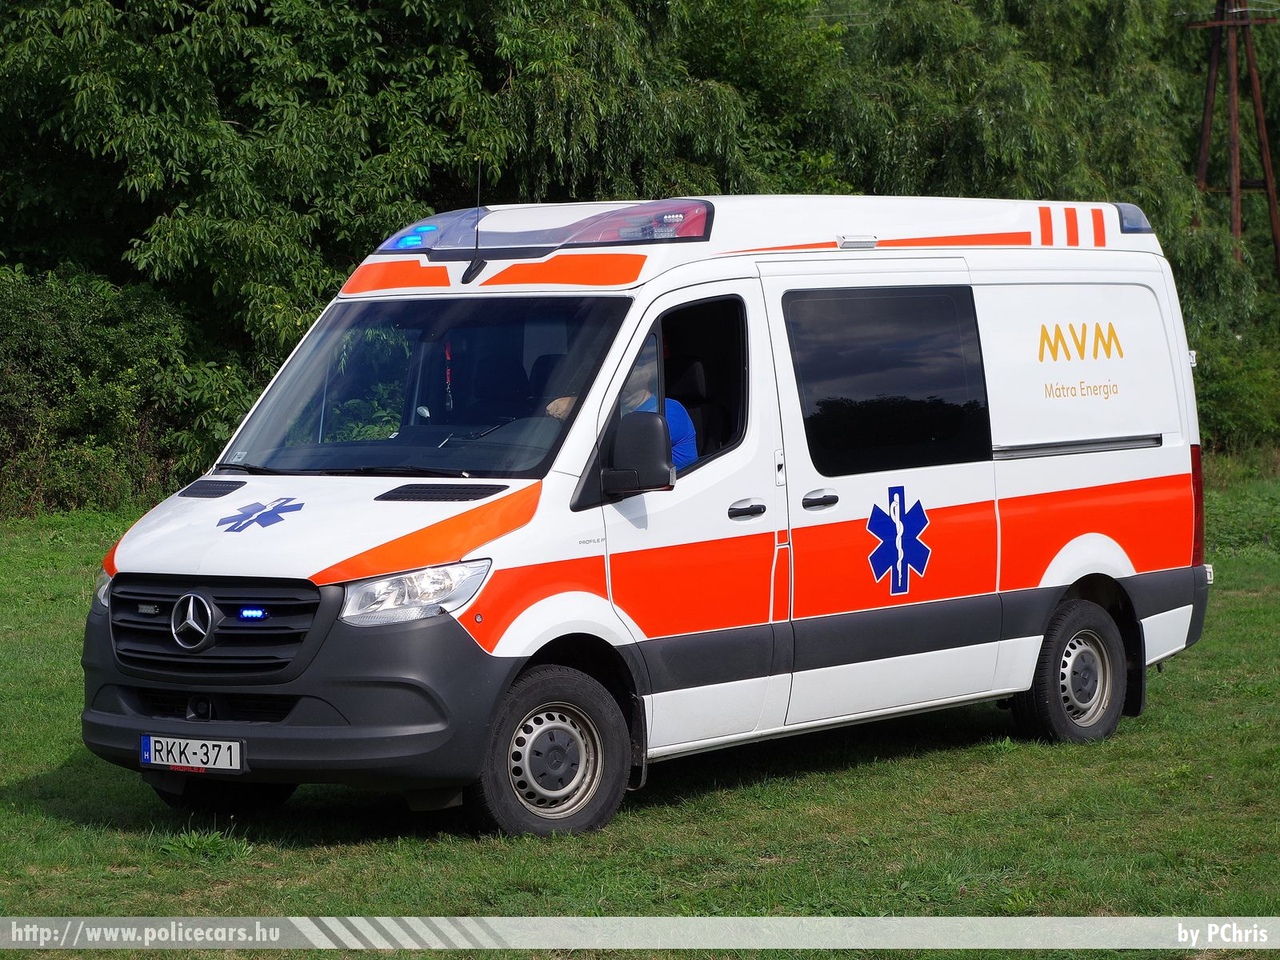 Mercedes Sprinter III Profile ambulance, MVM Mátra Energia Zrt., fotó: PChris
Keywords: mentő mentőautó magyar Magyarország hungarian Hungary ambulance RKK-371